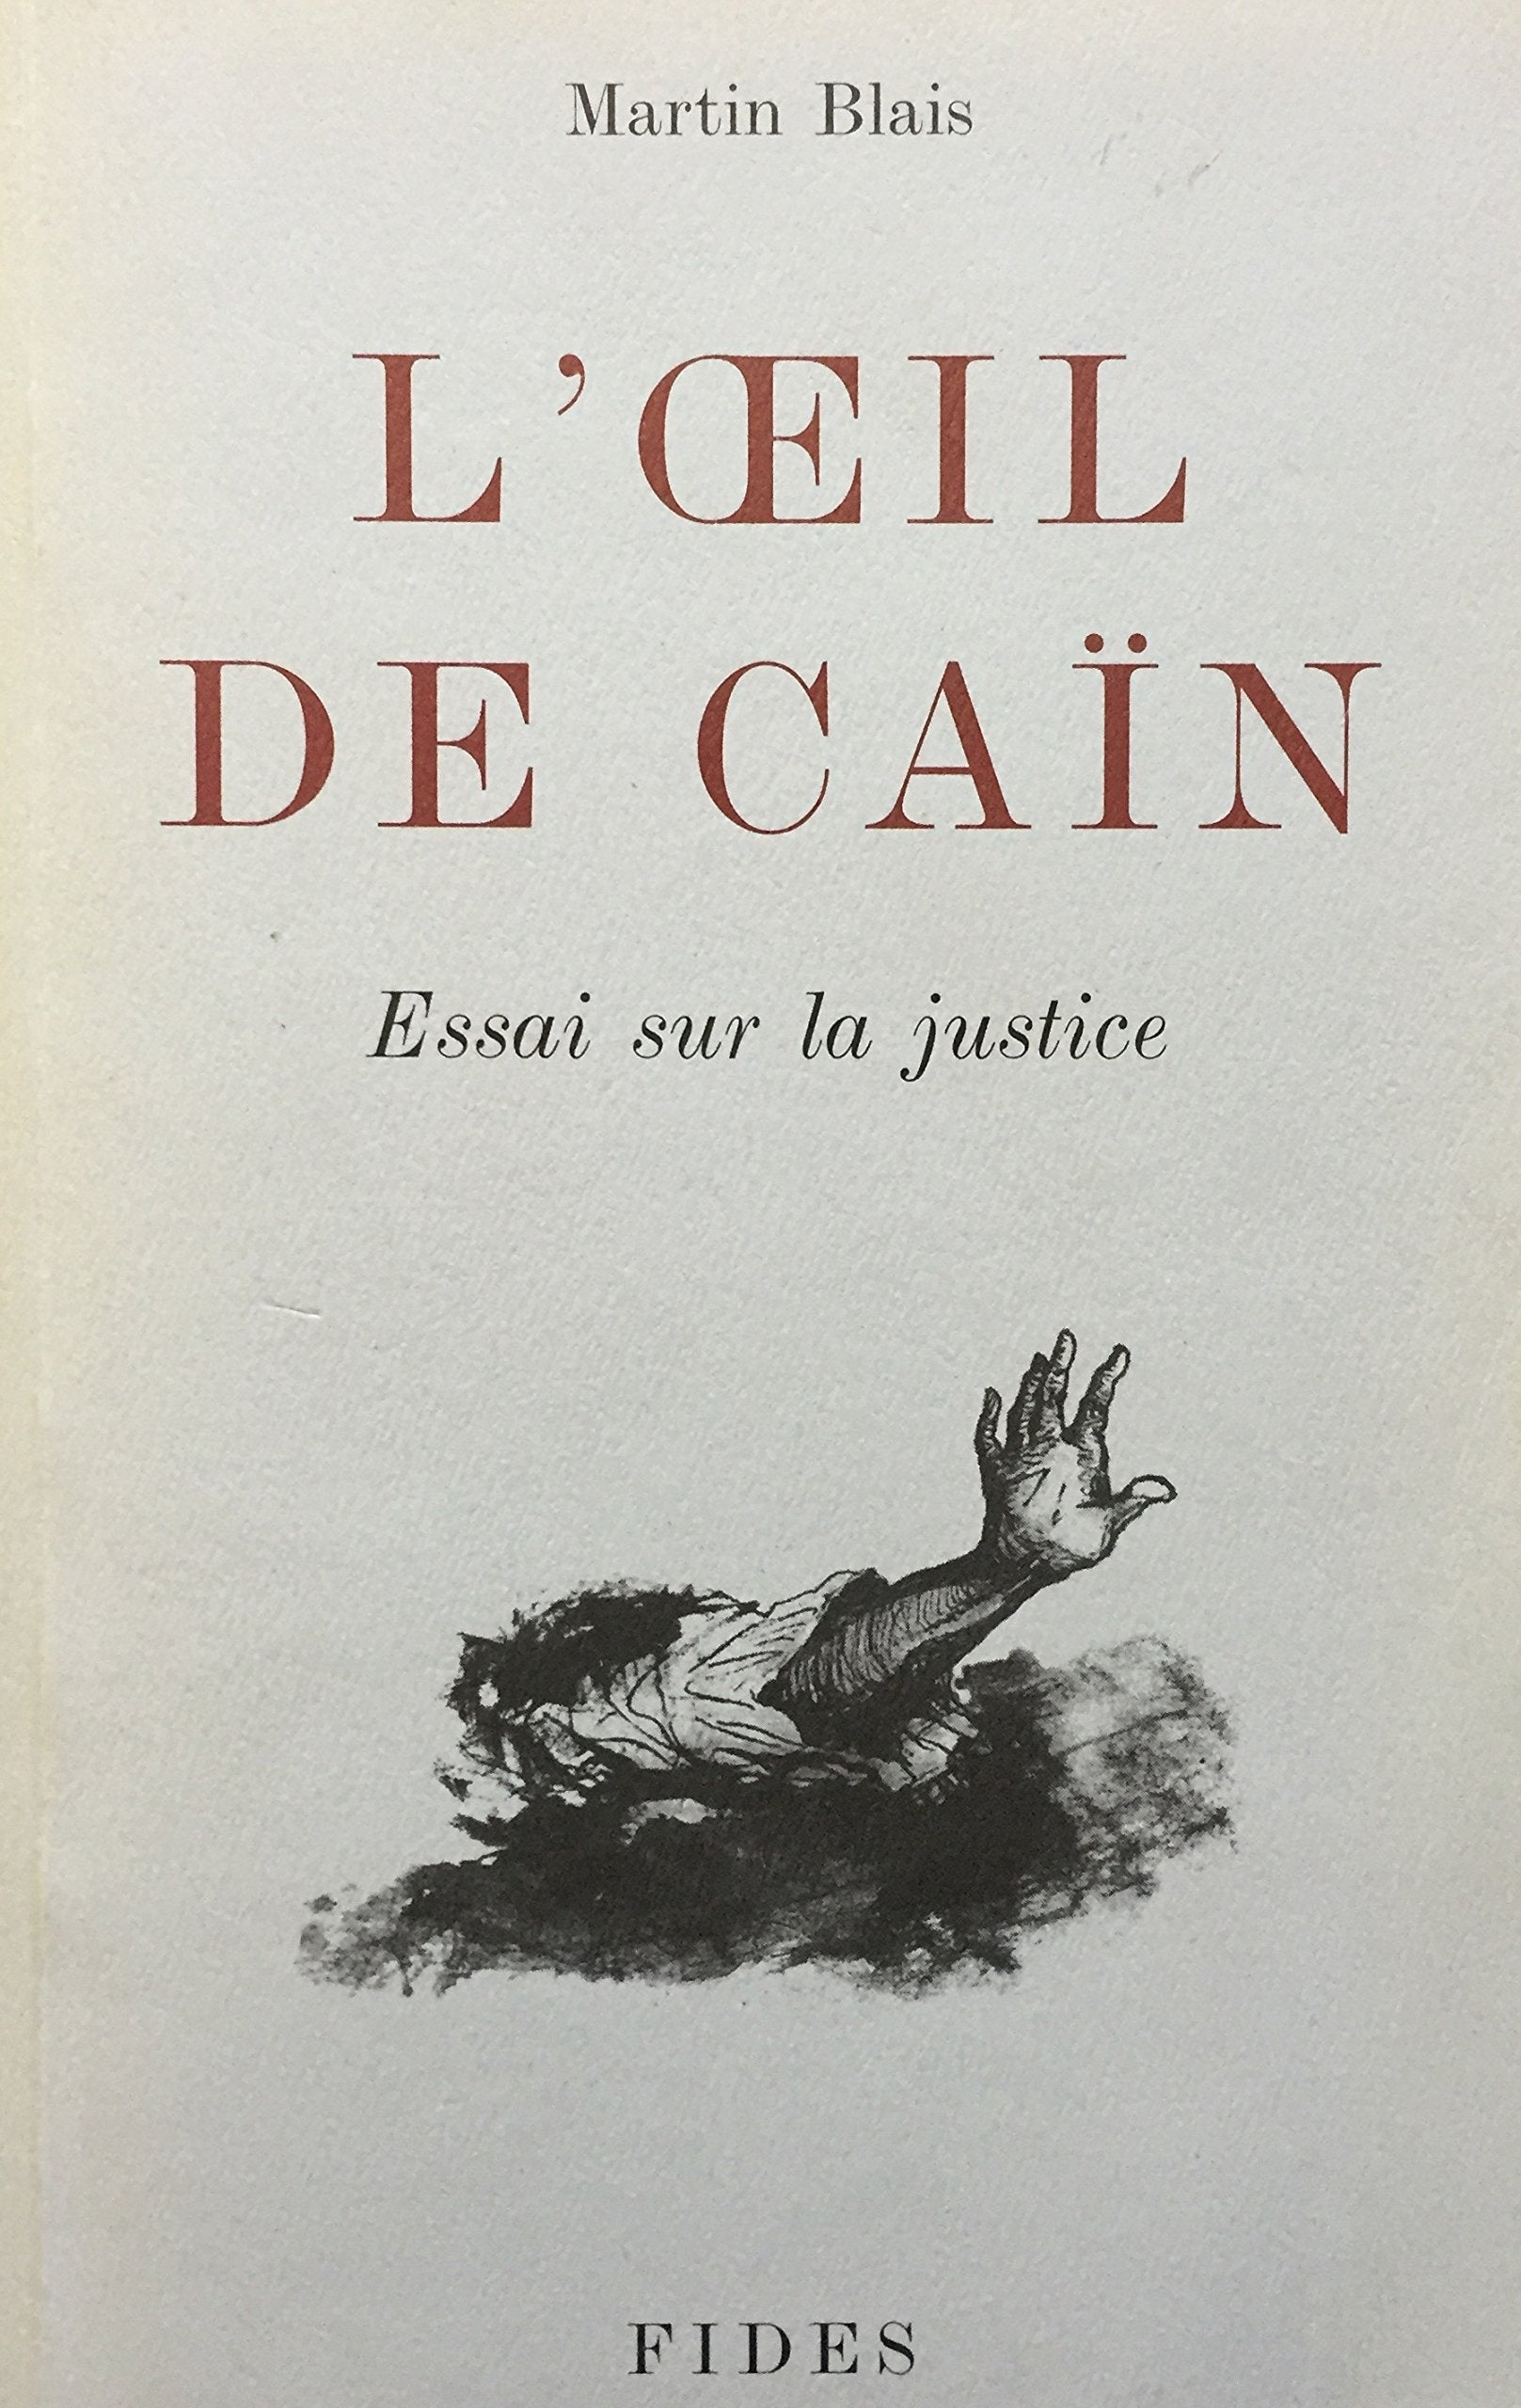 Livre ISBN 2762117097 L'oeil de Caïn : Essai sur la justice (Martin Blais)